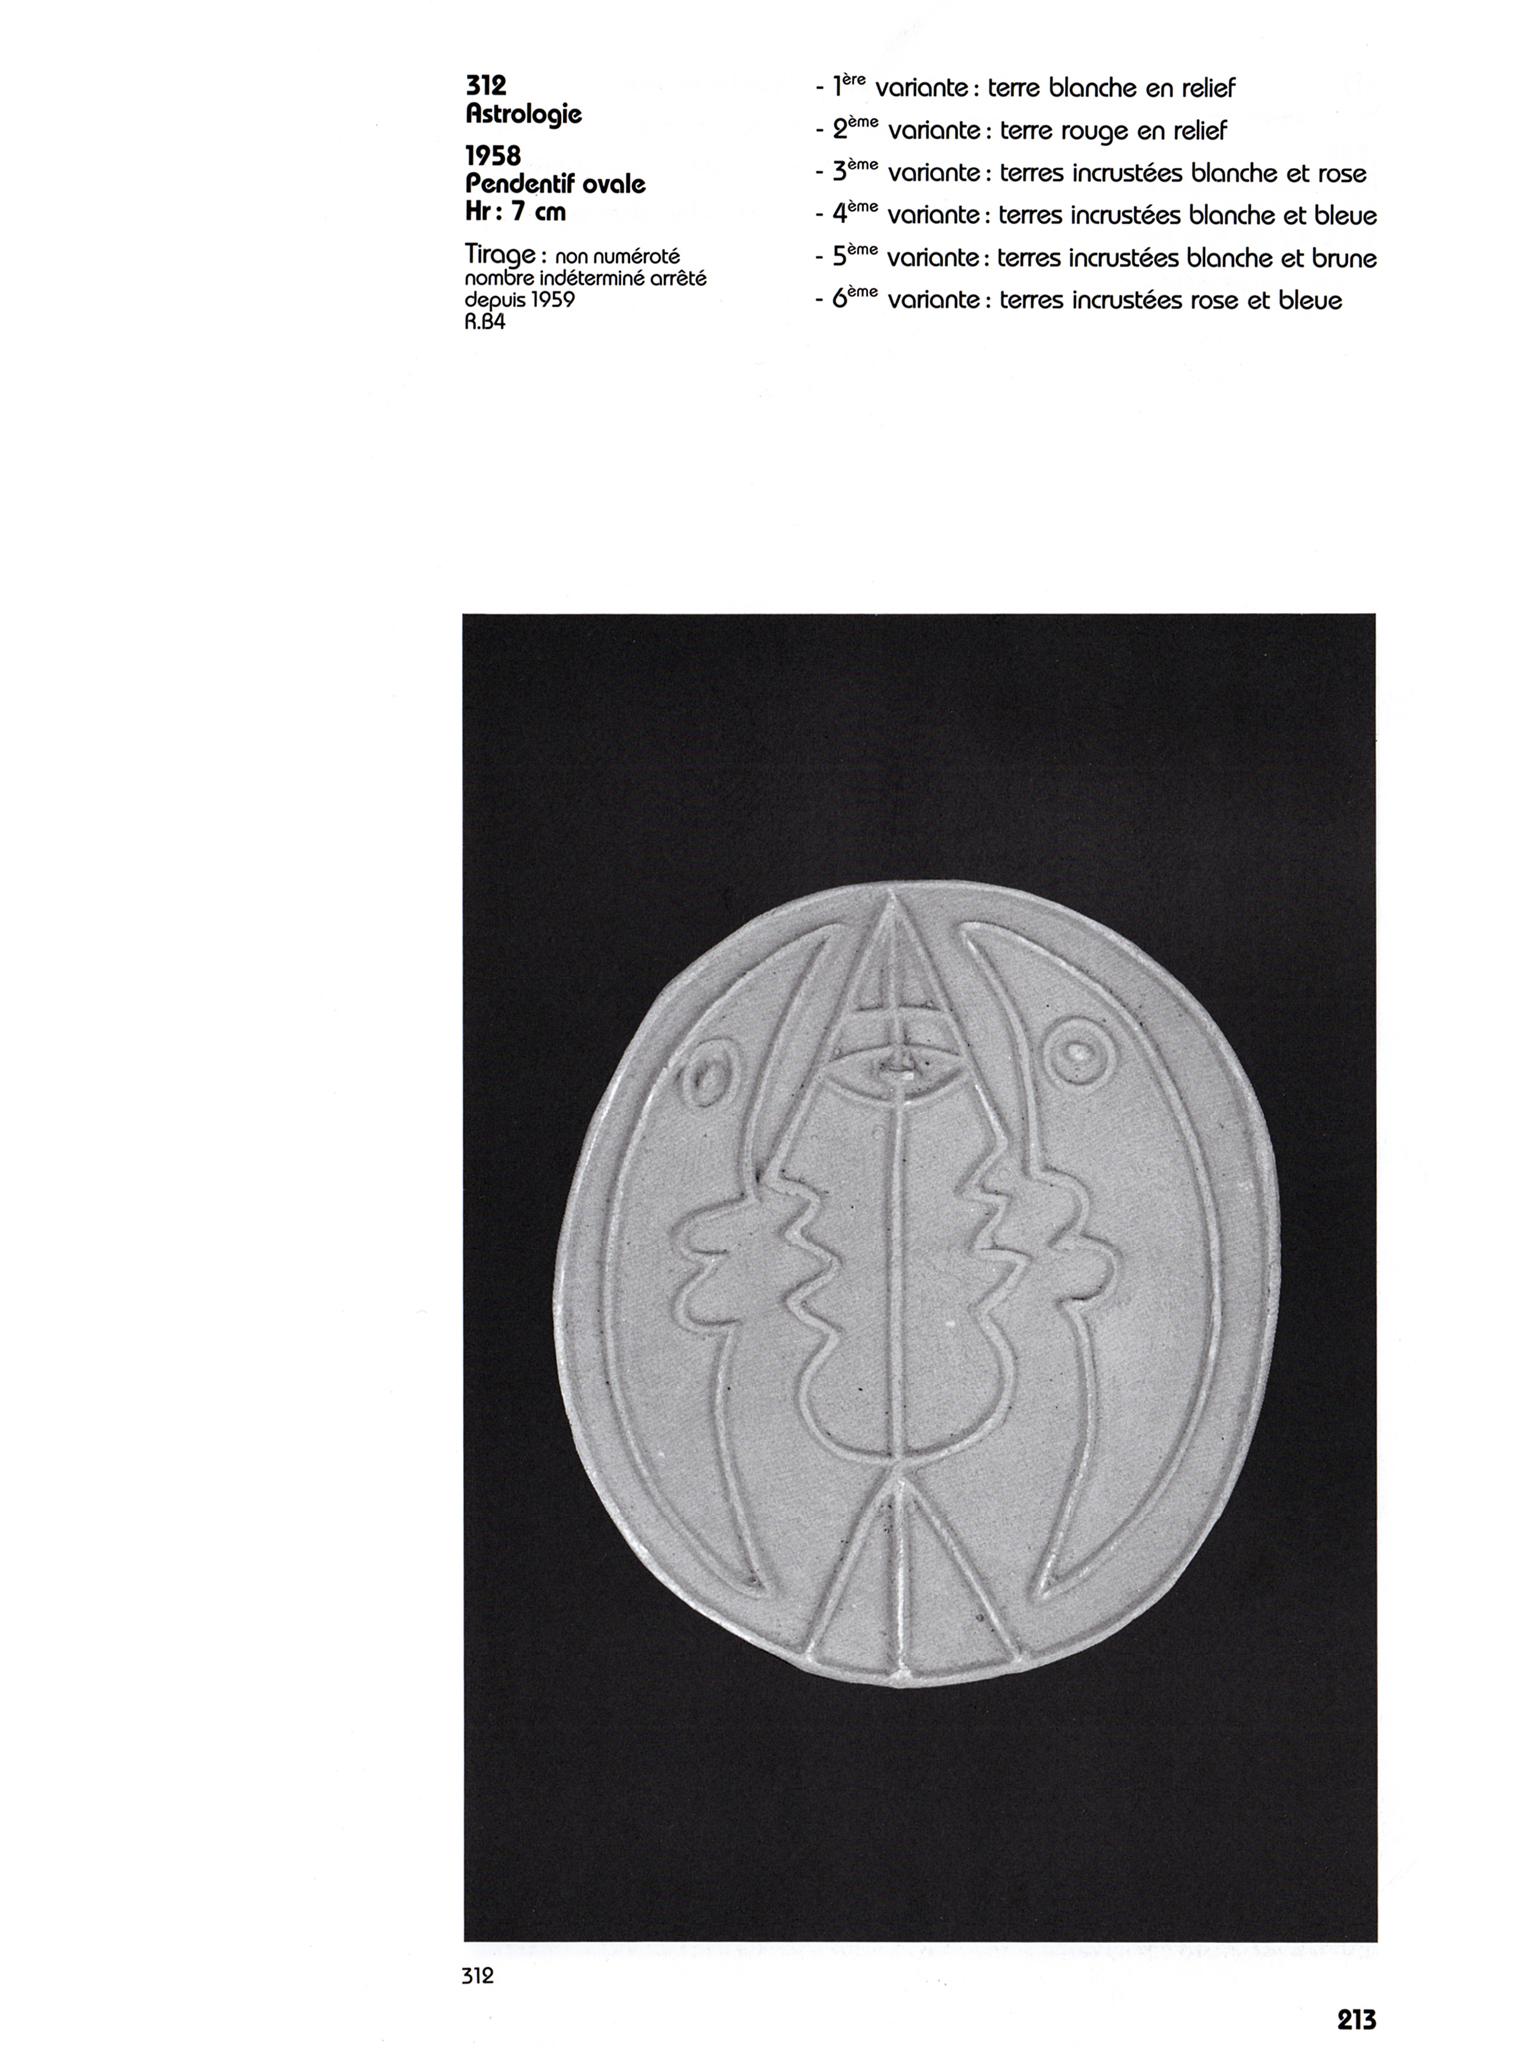 Jean Cocteau ( 1889 -1963 )

Vé : (& Astrology ) ( Blue variant ) . 1958 .
4éme variante : terre incrustée blanche et bleue 
Size : 7 cm . Signed underneath .

Astrology : Pendentif ovale 5blue variant ). 1958.
4ème Variante : terre incrustée